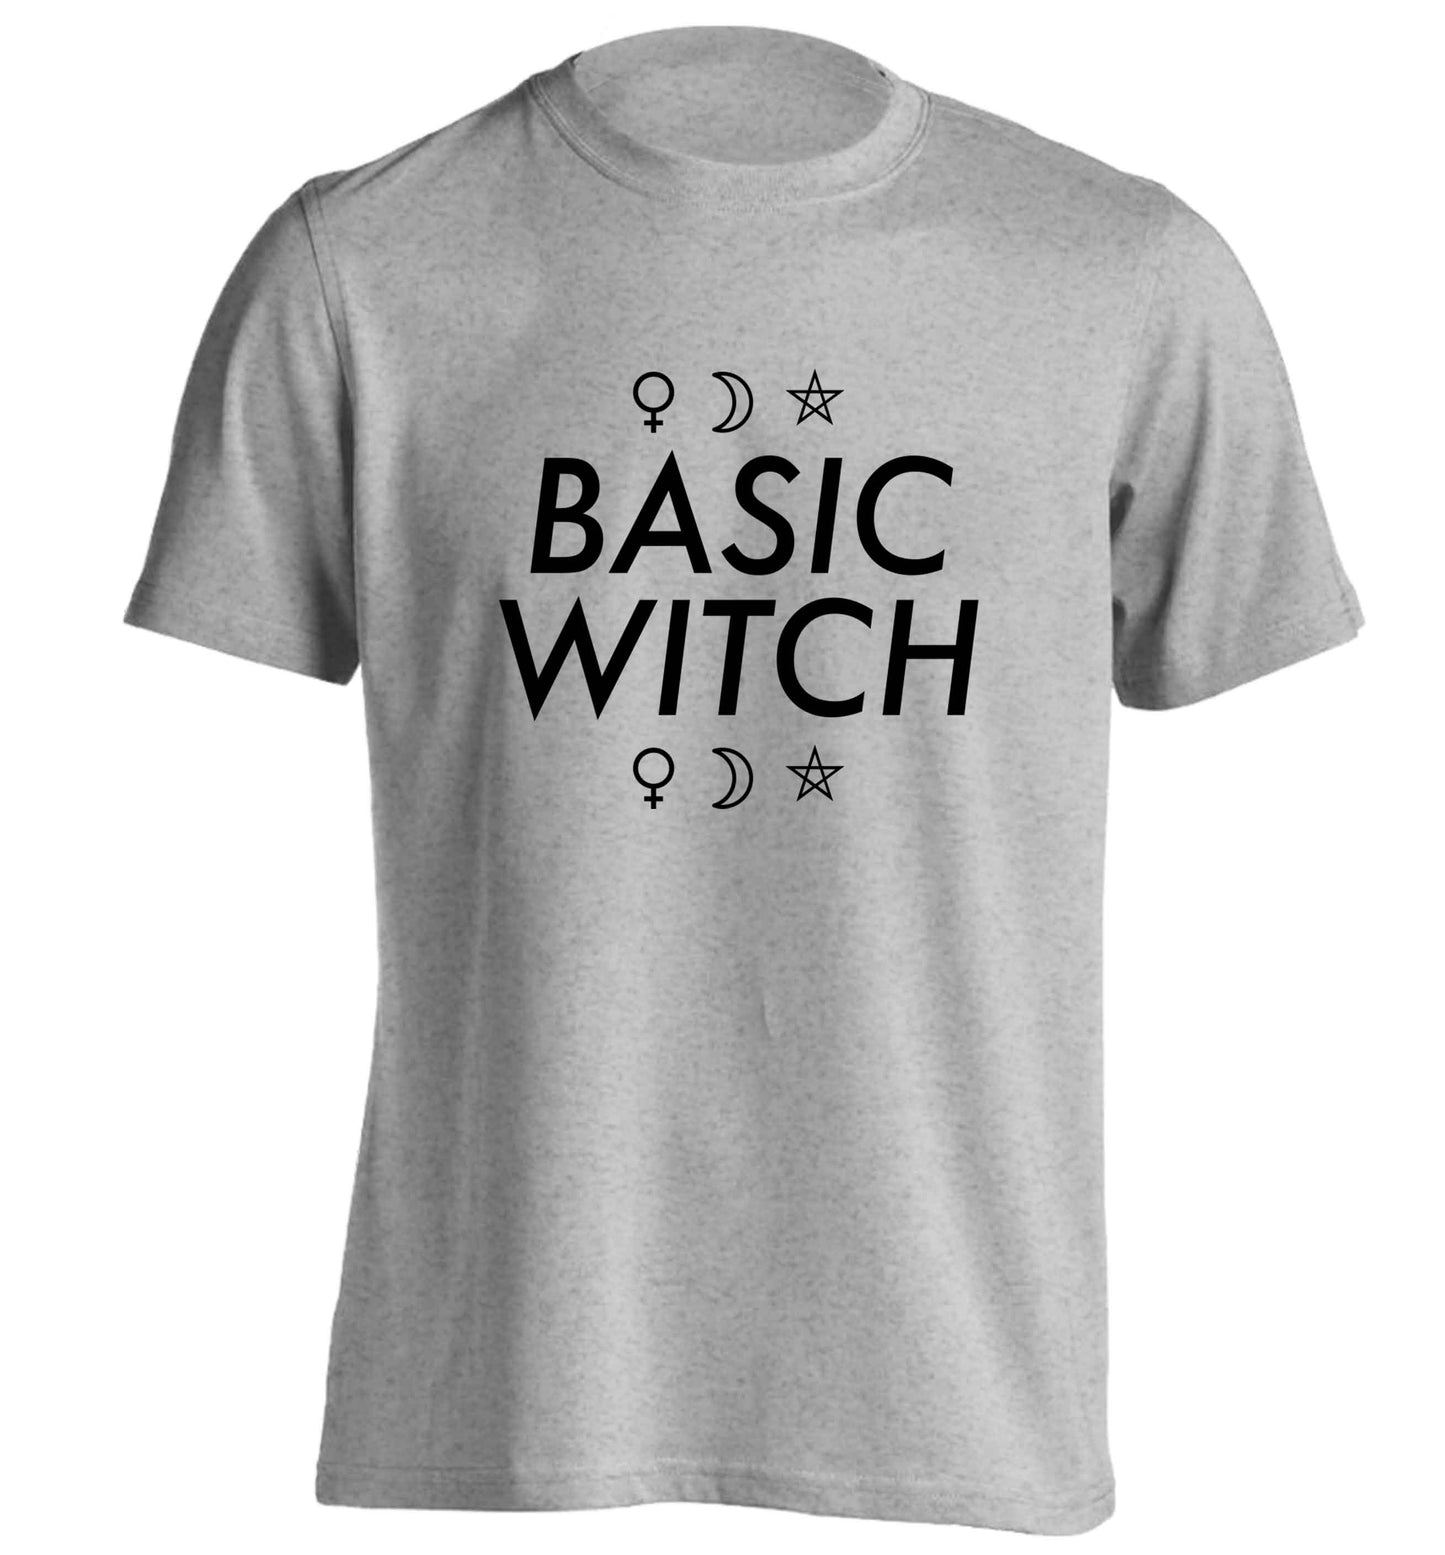 Basic witch 1 adults unisex grey Tshirt 2XL